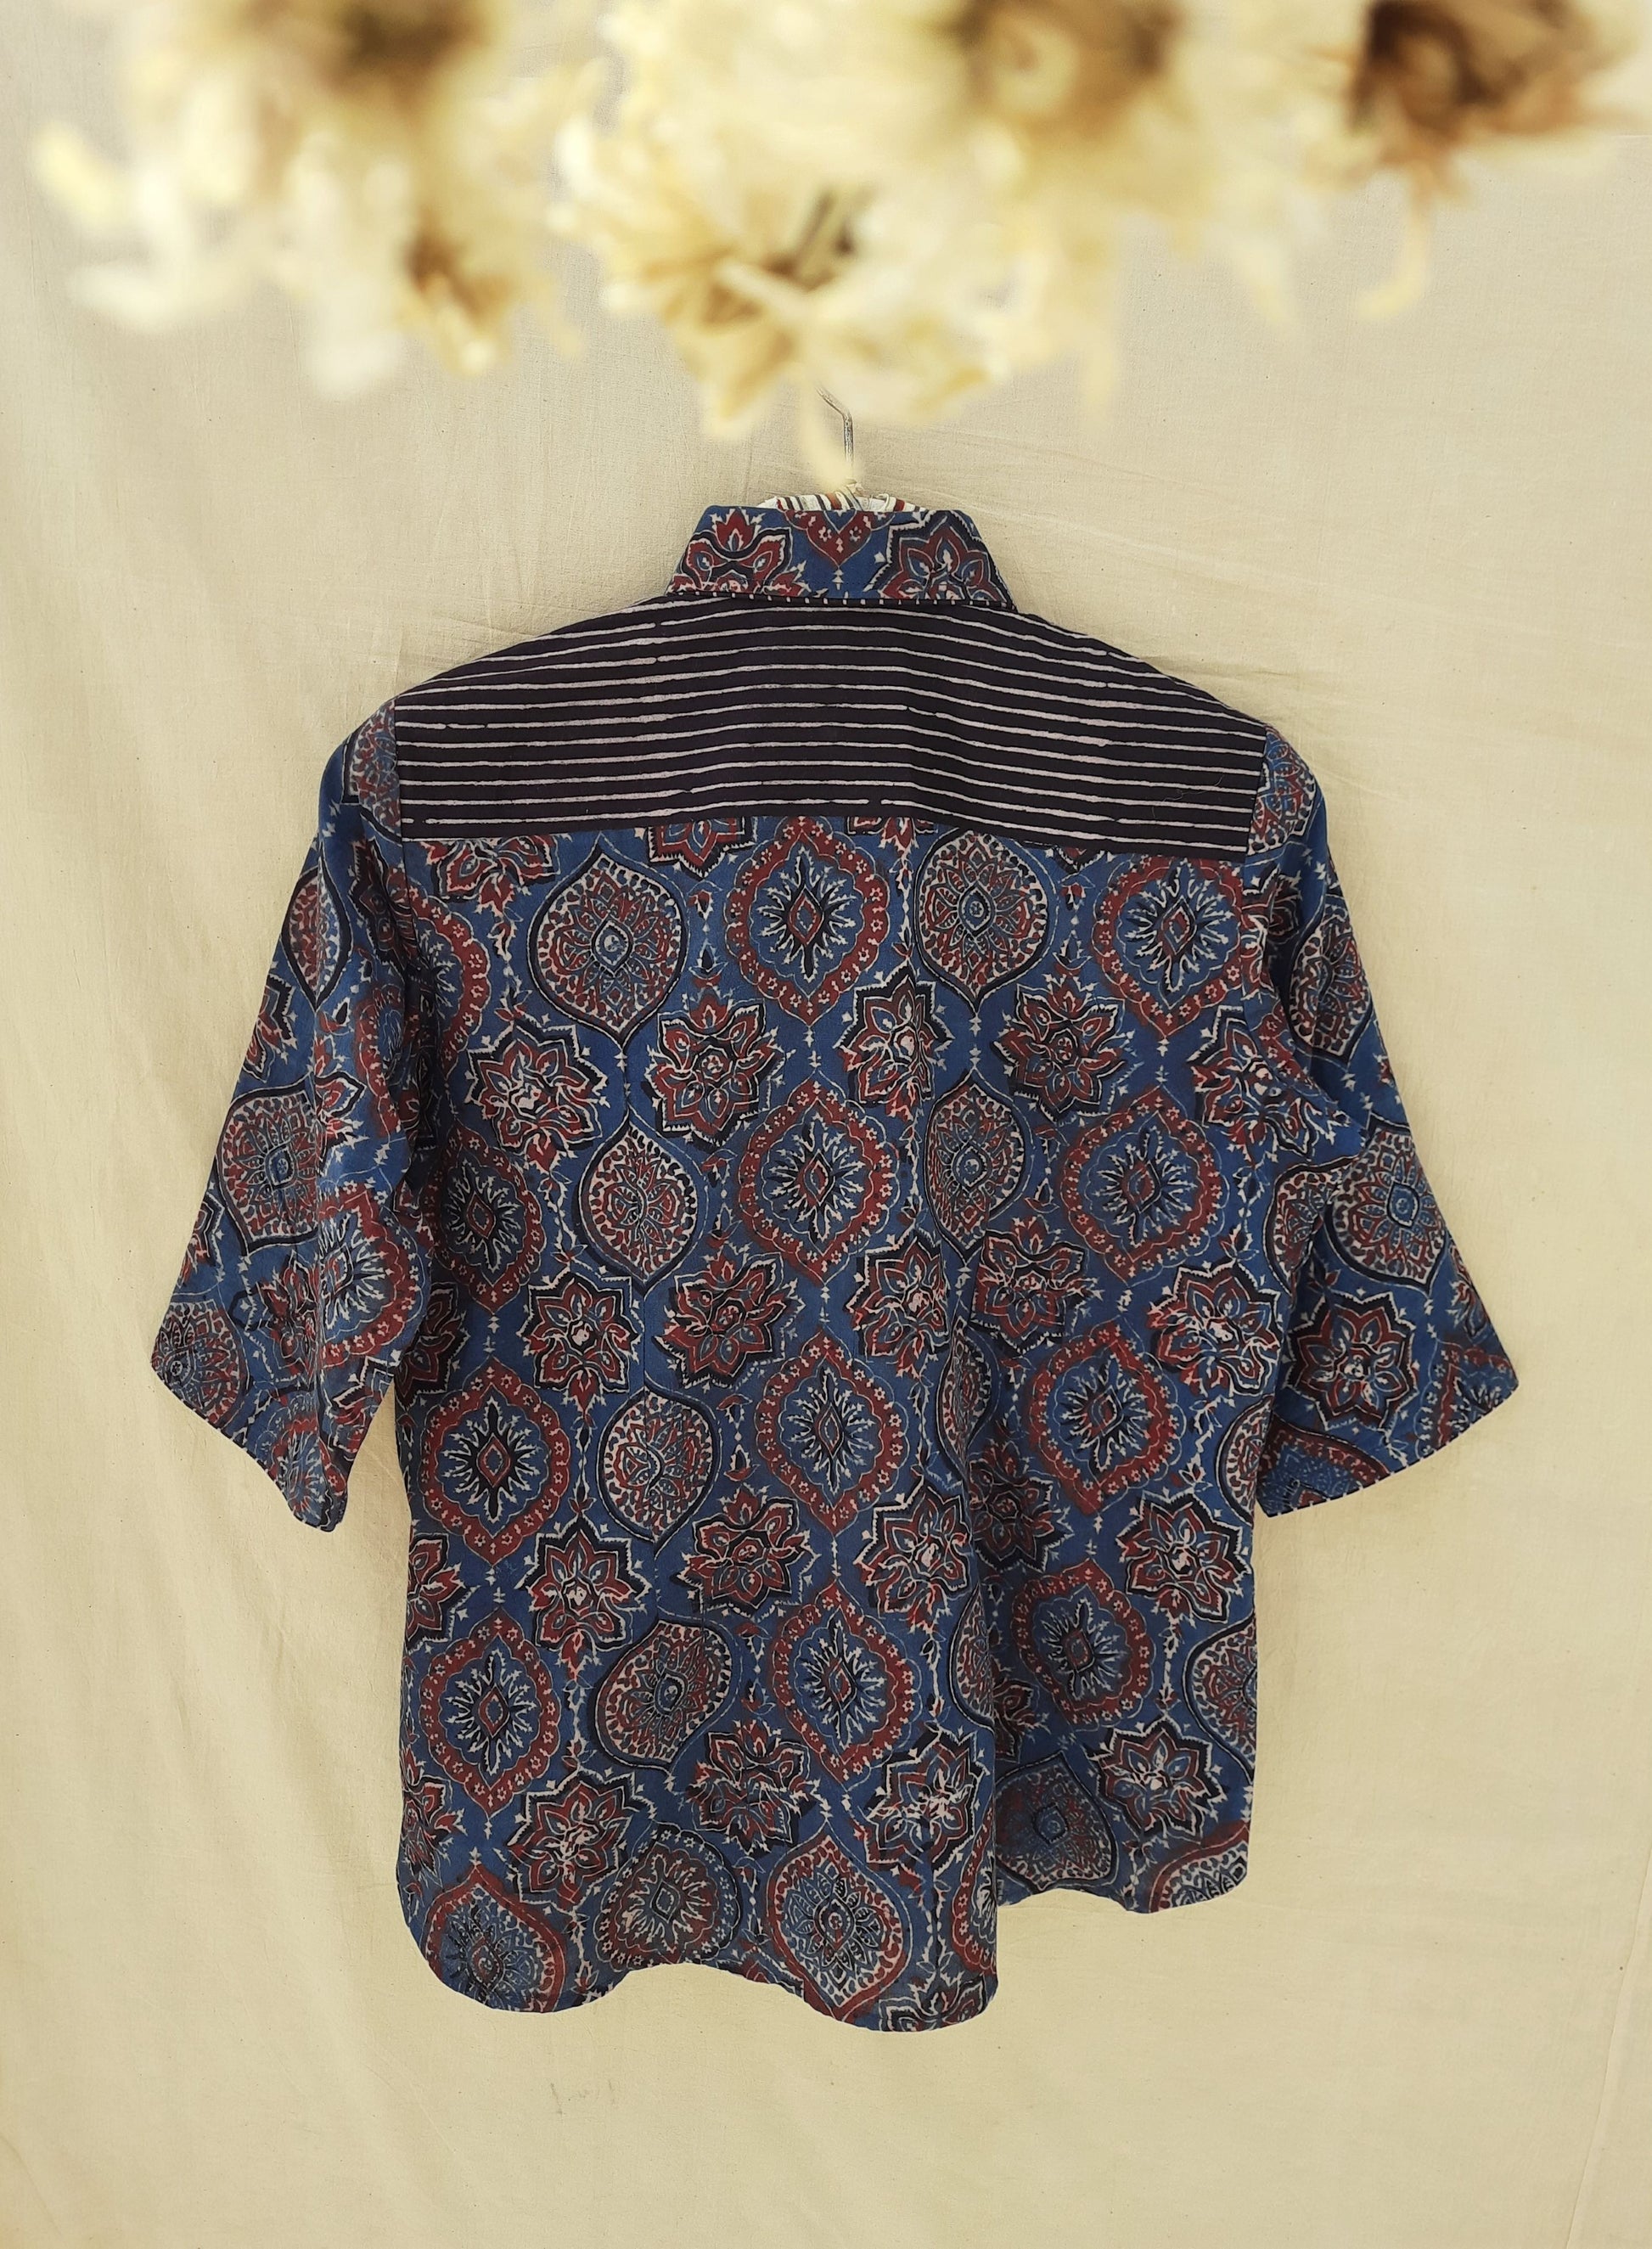 Indigo ajrakh women's shirt in cotton